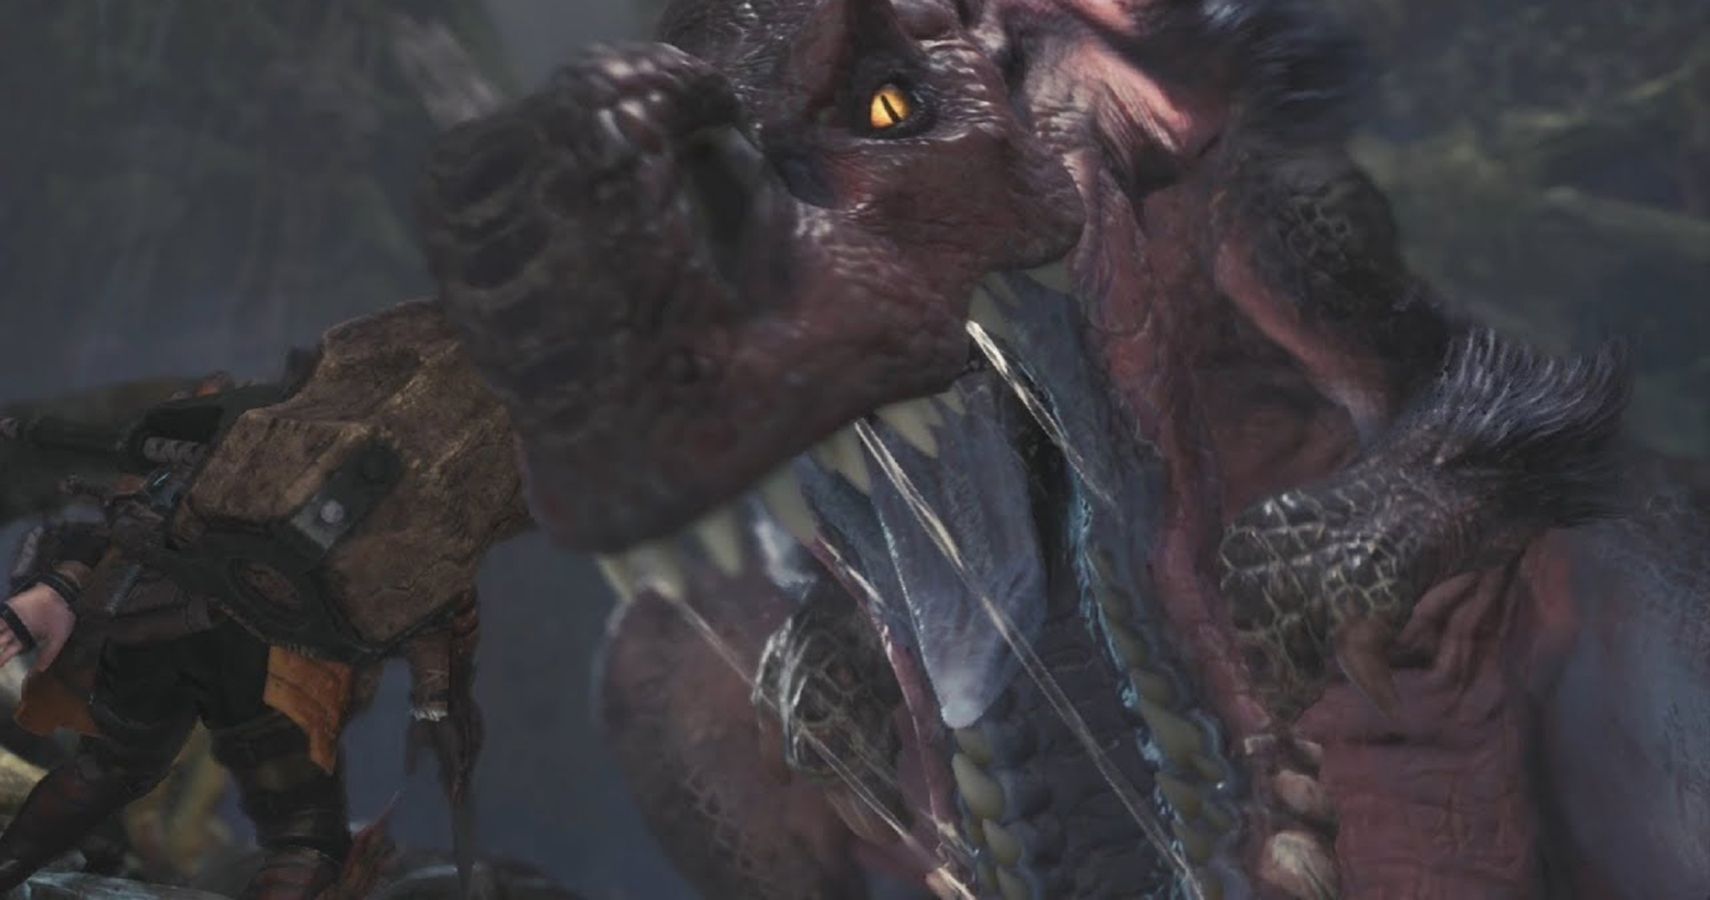 The Toughest Monsters in Monster Hunter World Ranked